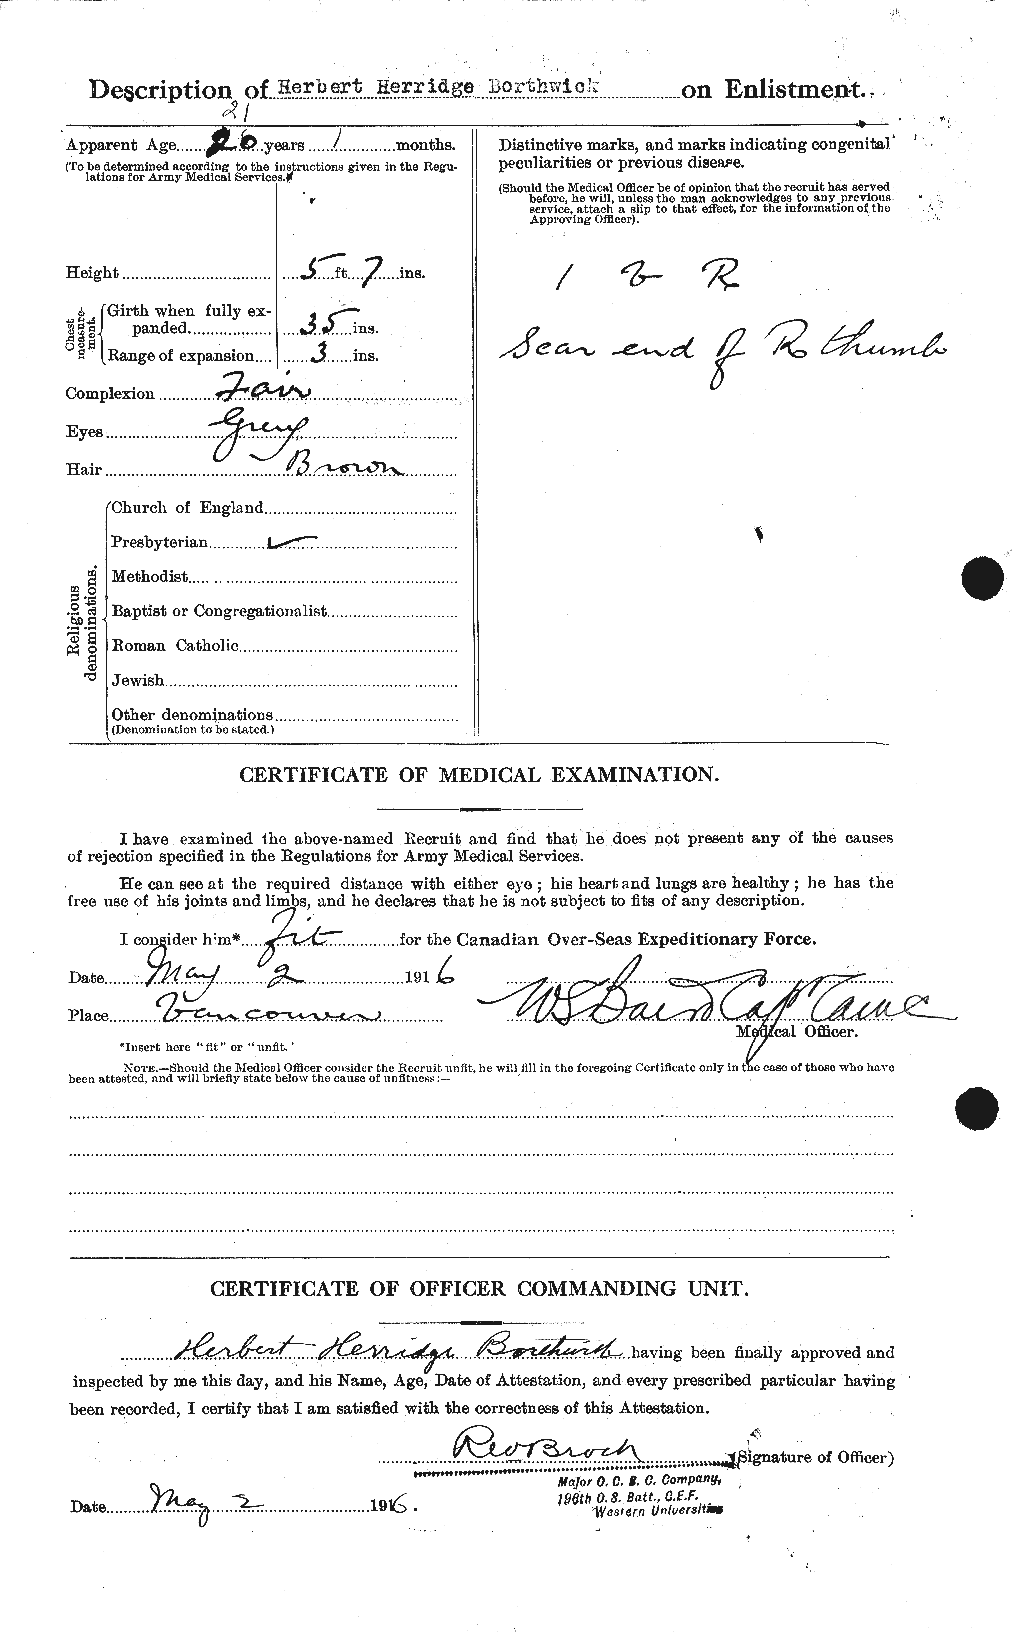 Dossiers du Personnel de la Première Guerre mondiale - CEC 253497b